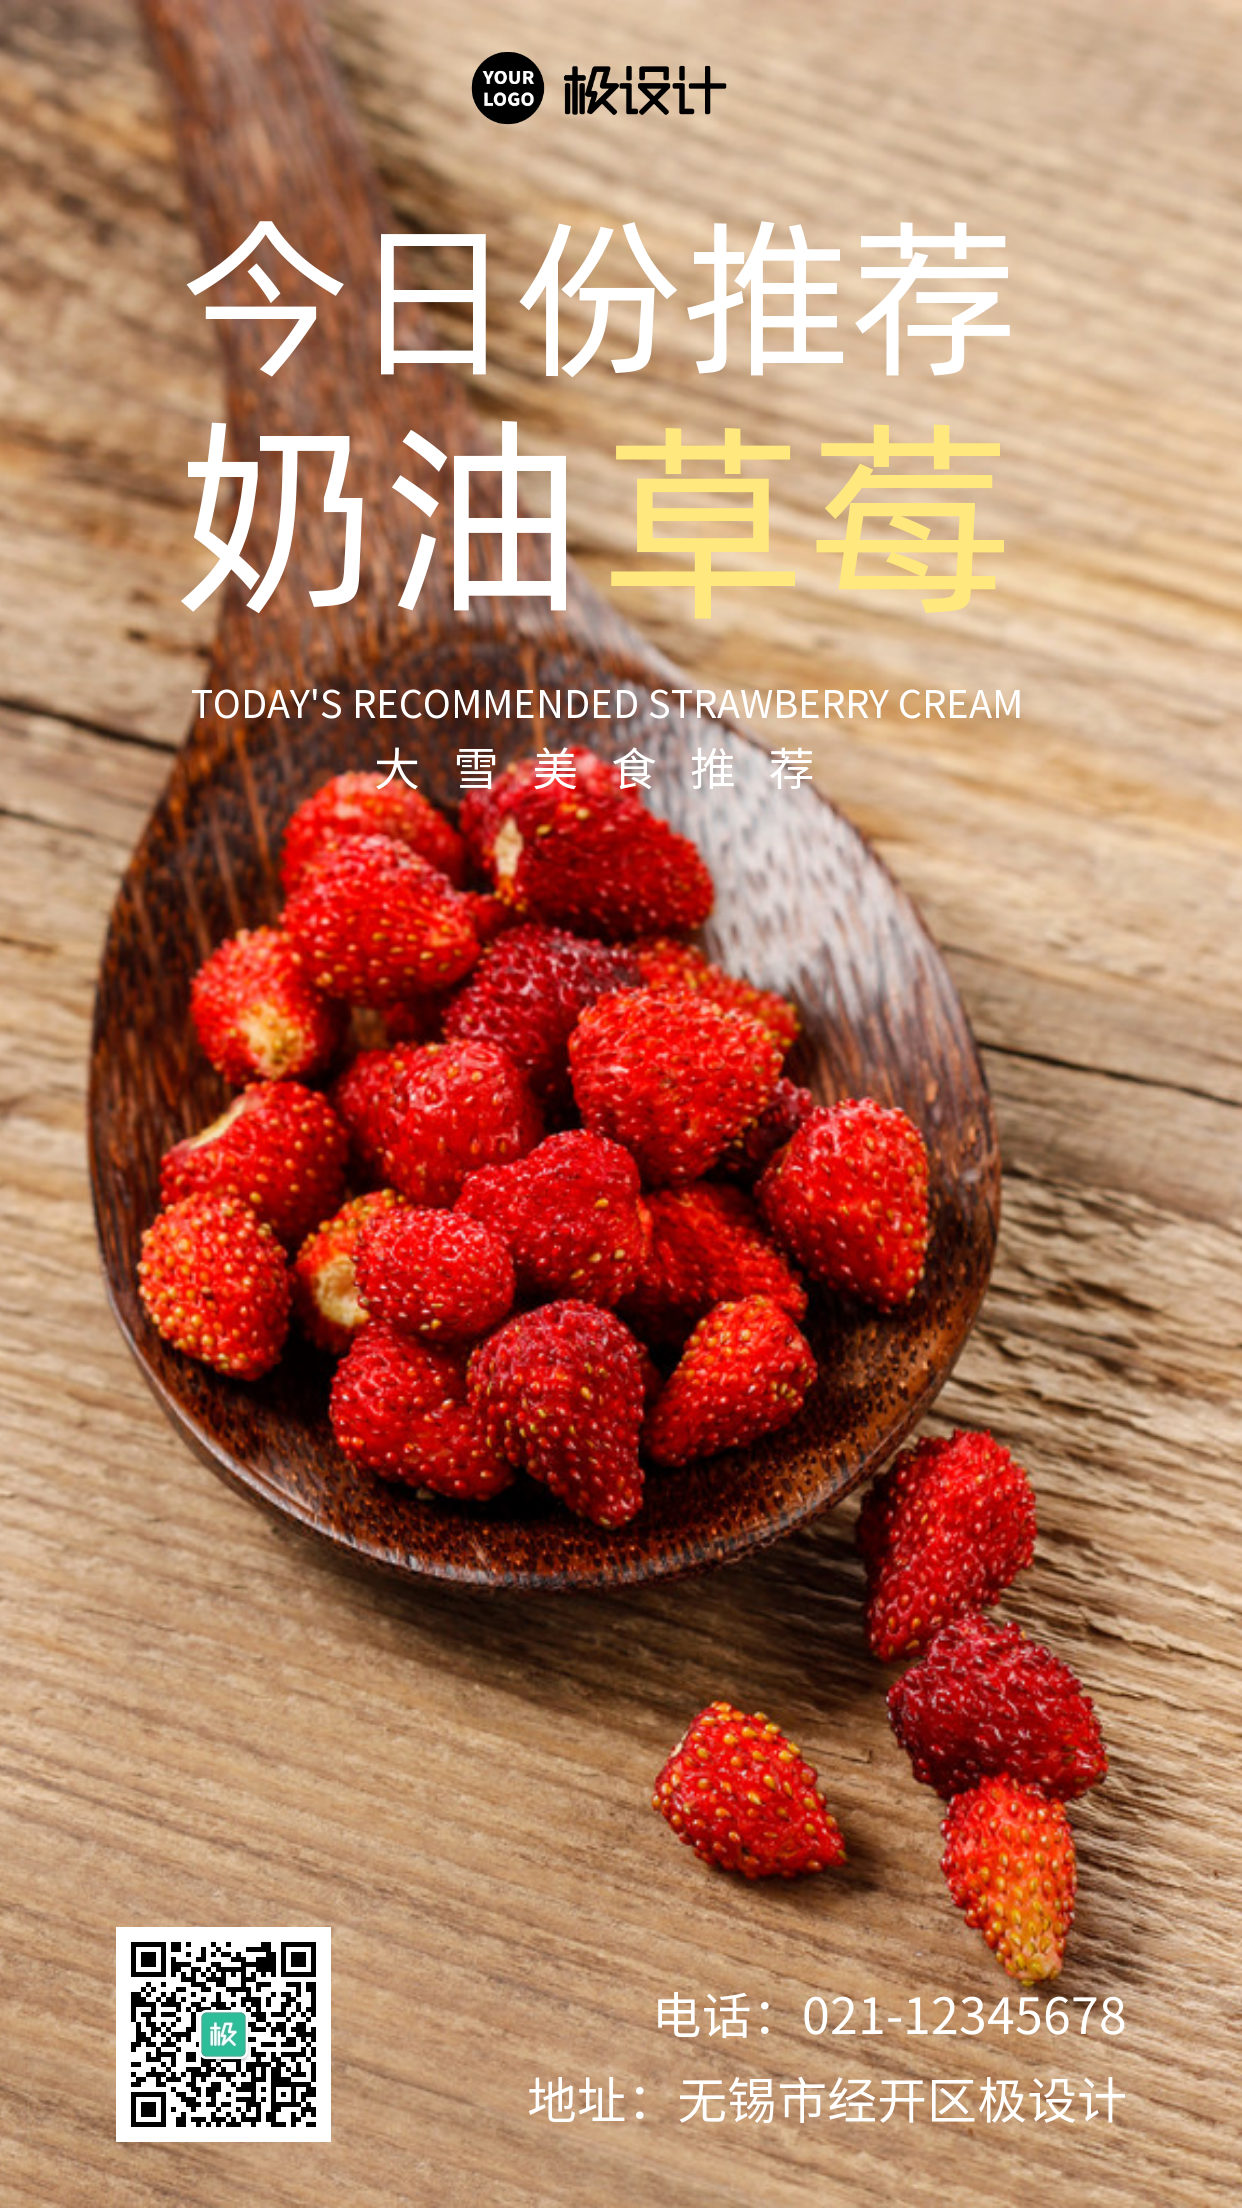 简约大气摄影风大雪美食草莓推荐手机营销海报